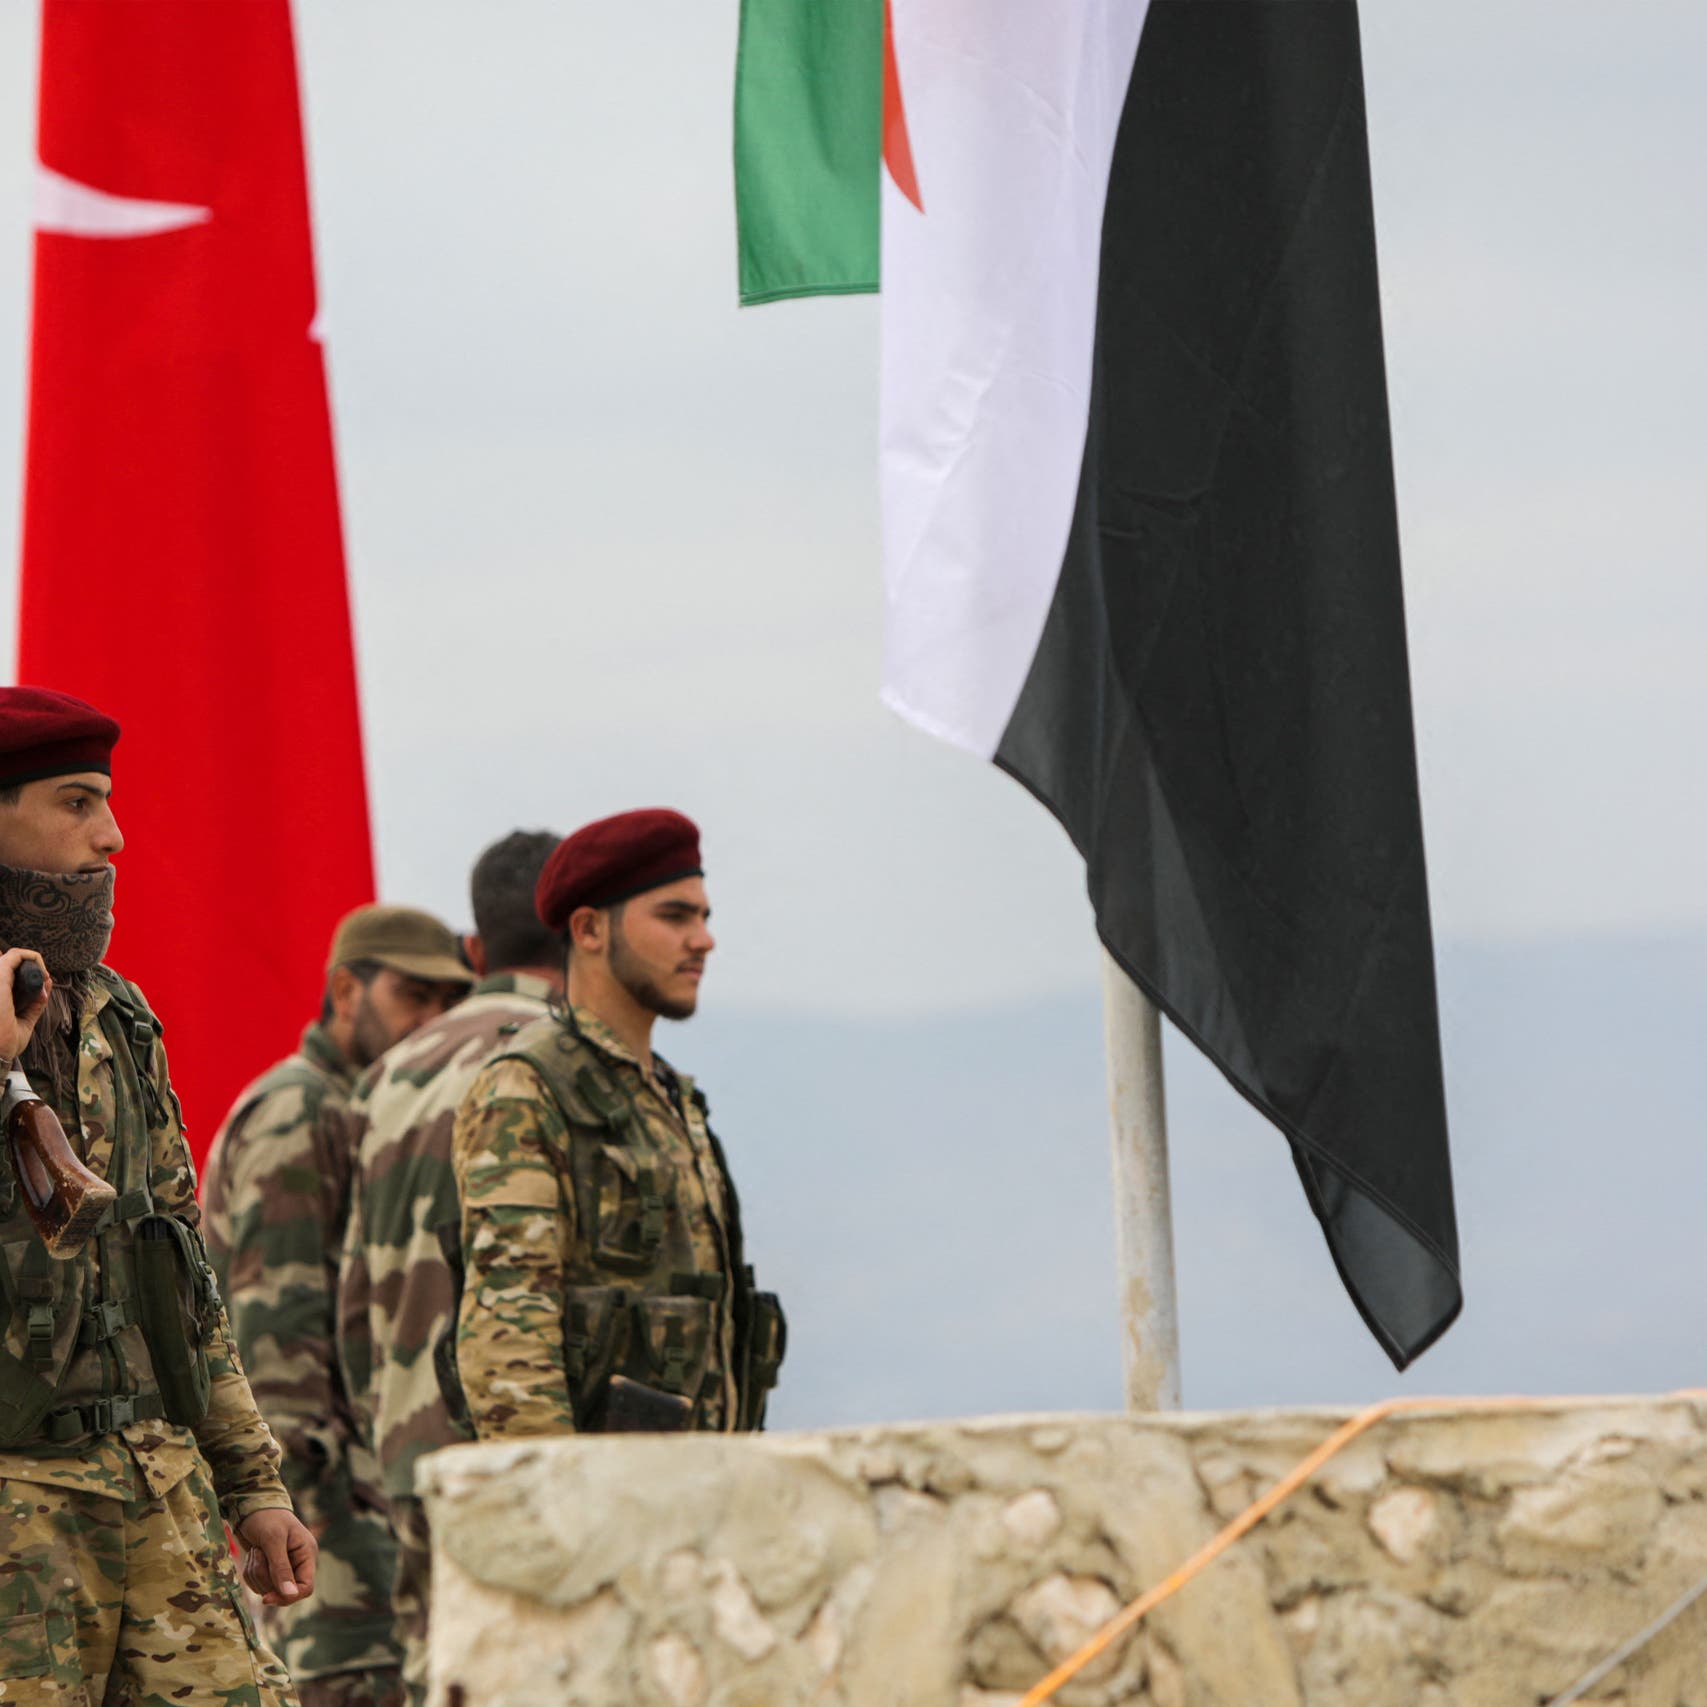 قبل لقاء بوتين أردوغان.. روسيا تدك مناطق تركيا في سوريا